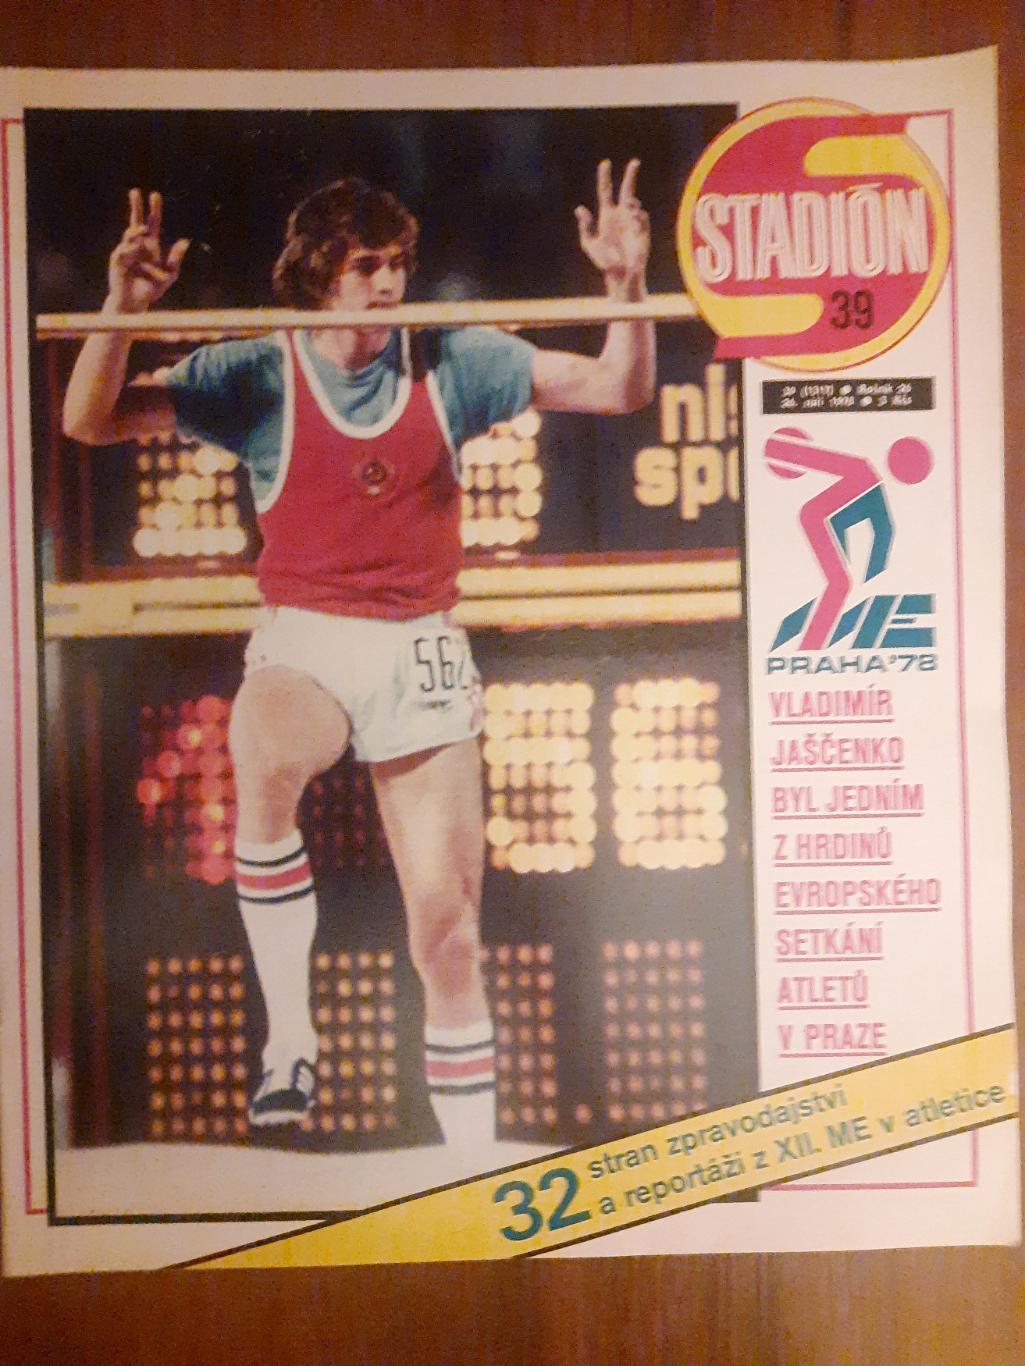 Стадион,Чехословакия #39(1317) 1978, спецвыпуск легкая атлетика ЧЕ.